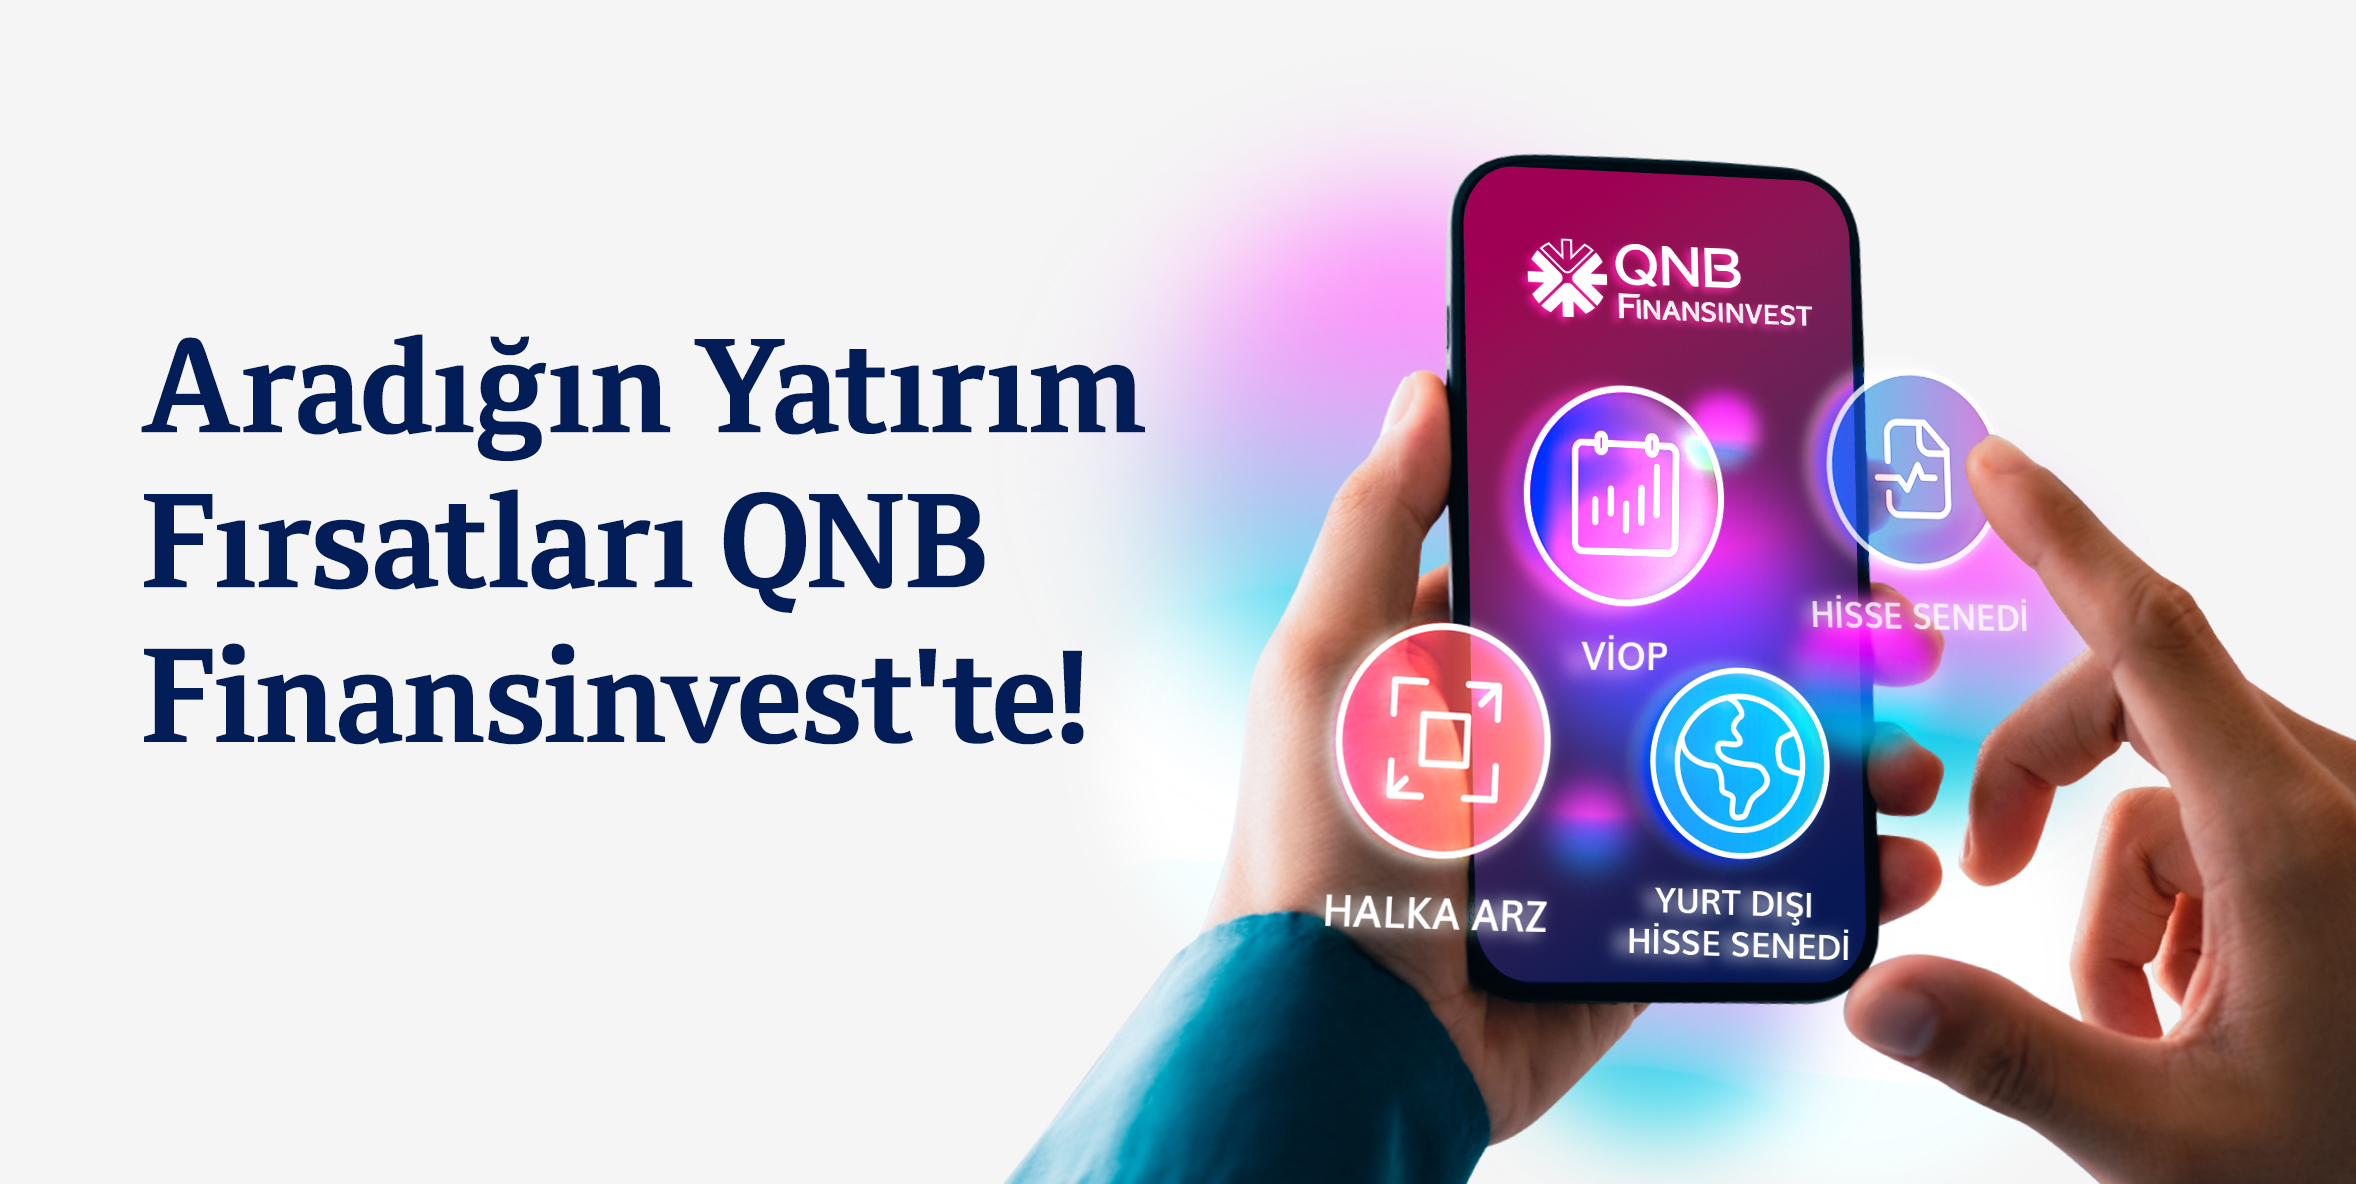 Aradığın yatırım fırsatları QNB Finansinvest'te